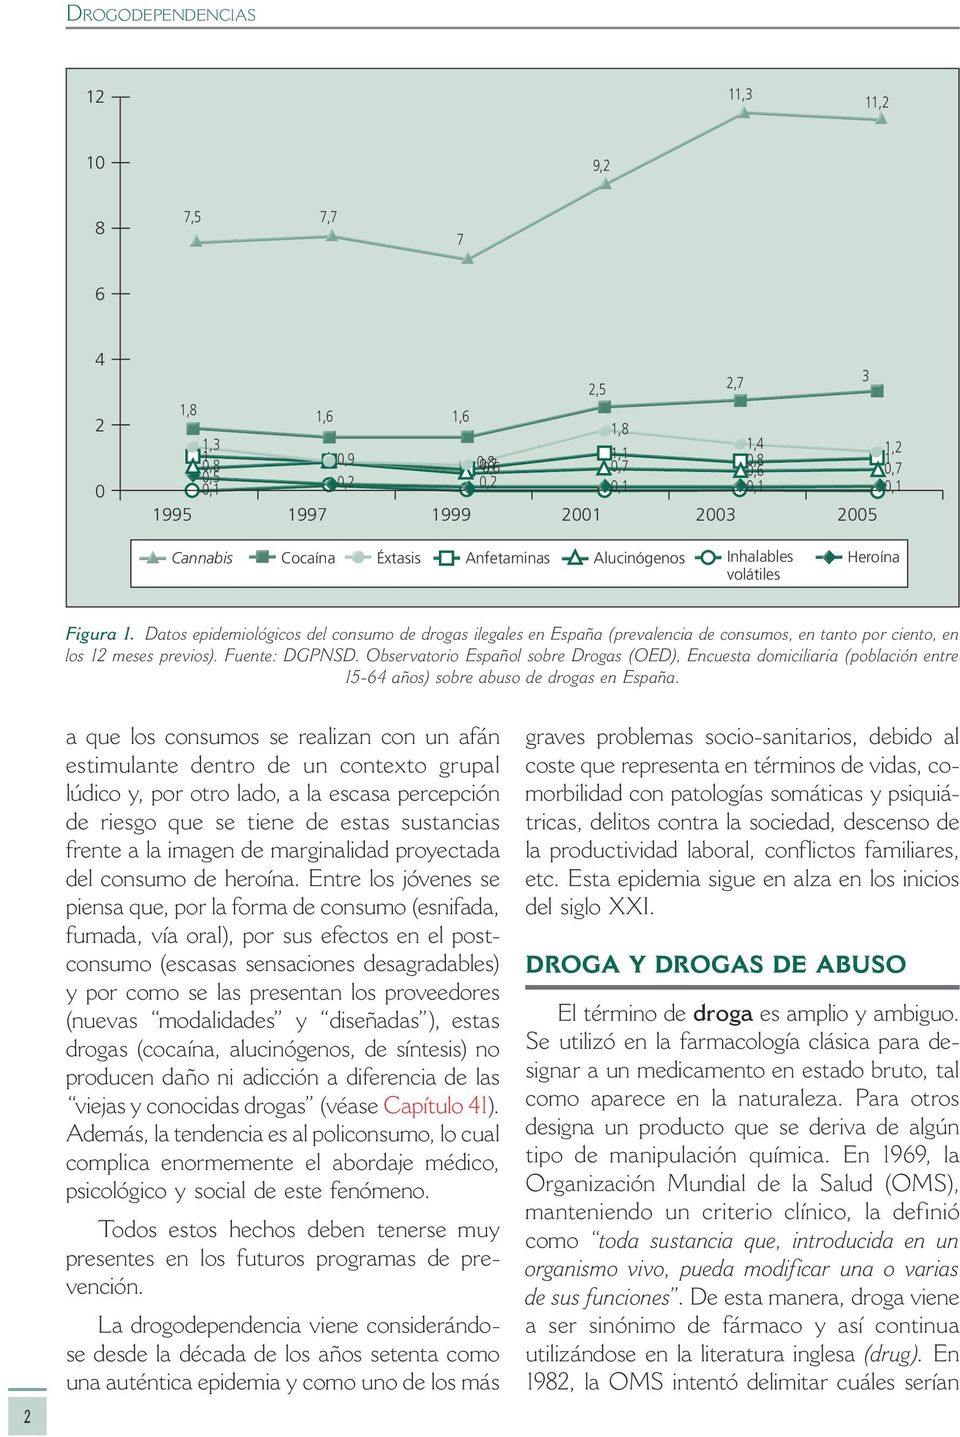 Datos epidemiológicos del consumo de drogas ilegales en España (prevalencia de consumos, en tanto por ciento, en los 12 meses previos). Fuente: DGPNSD.